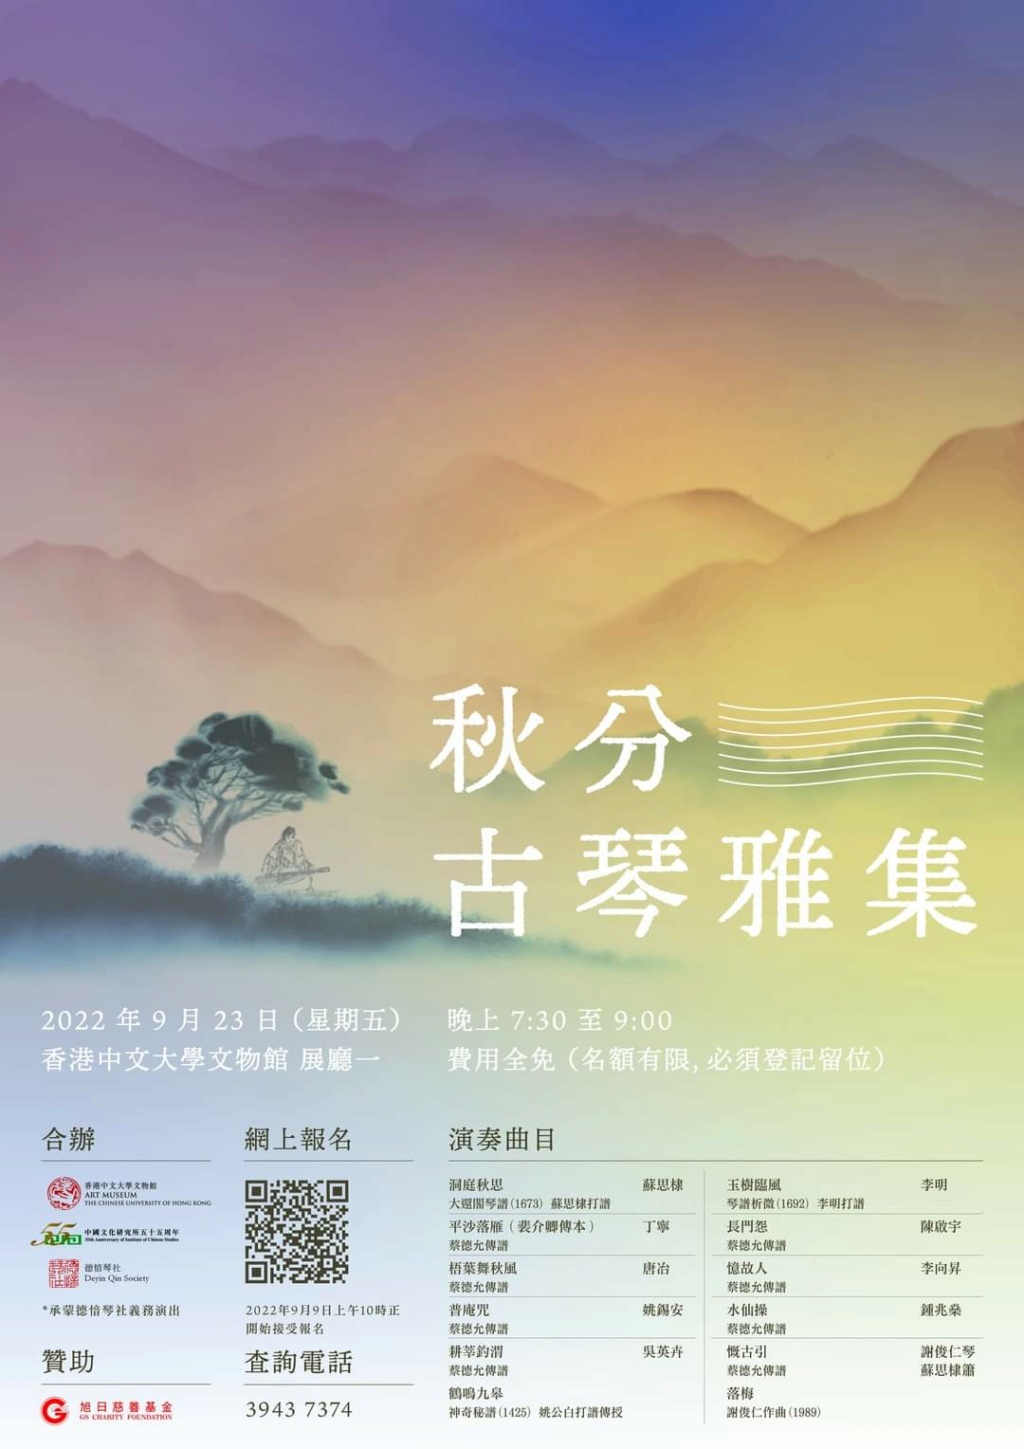 【秋分古琴雅集 Autumn Guqin Concert 2022】 New_i170